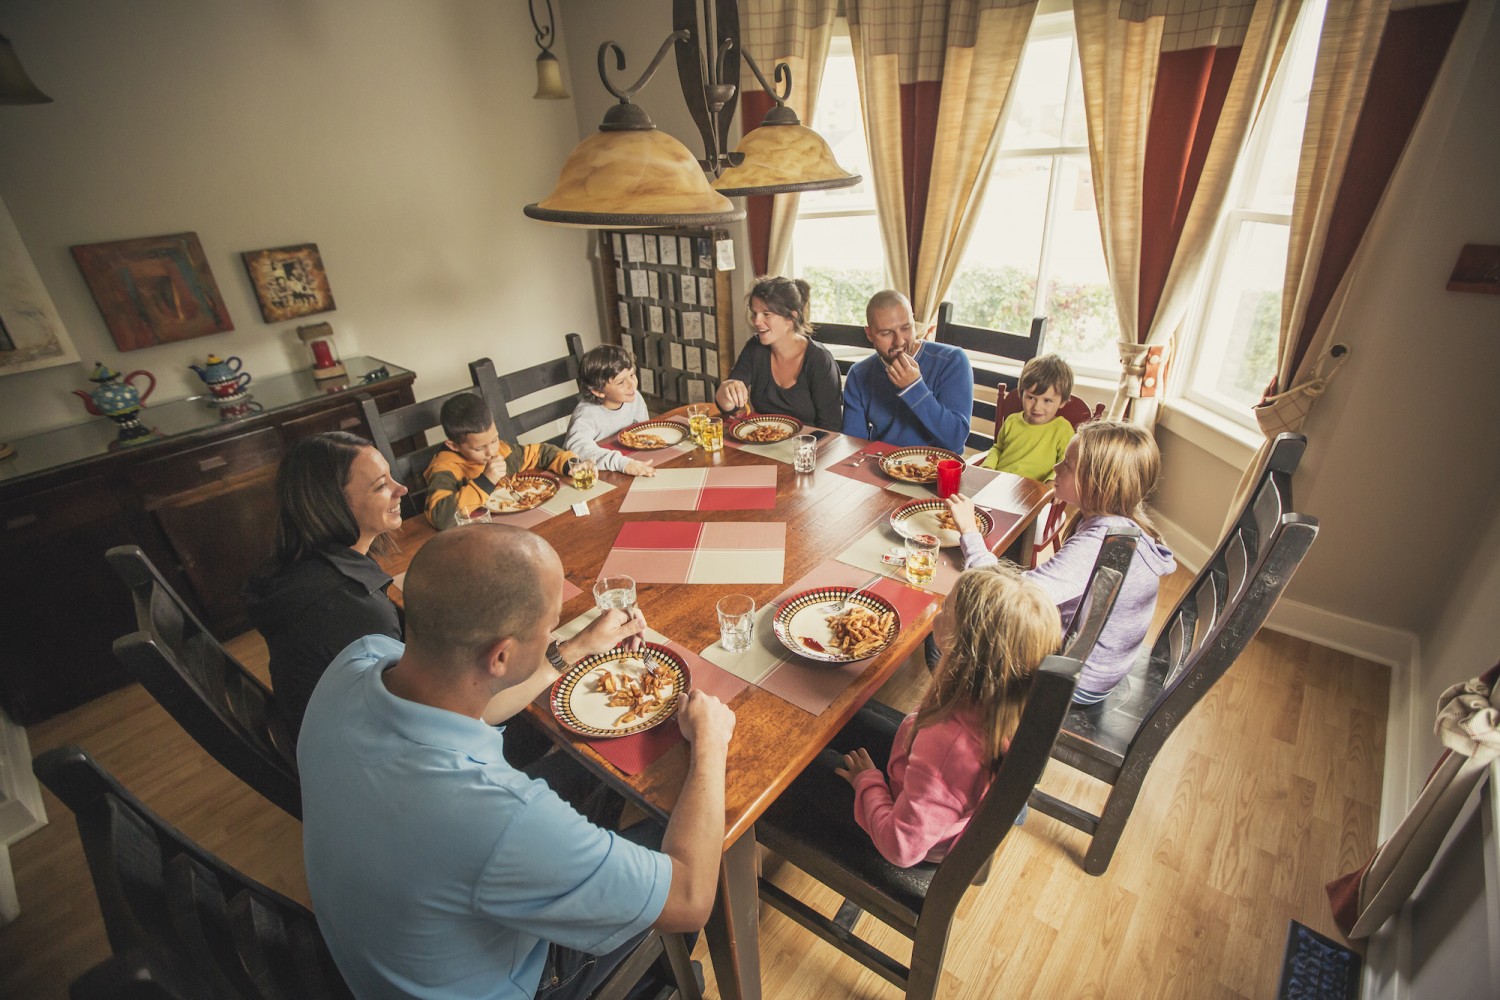 Family enjoying a meal in the Prospector's House dining room / Famille profitant d'un bon repas dans la salle à manger de la Maison des prospecteurs